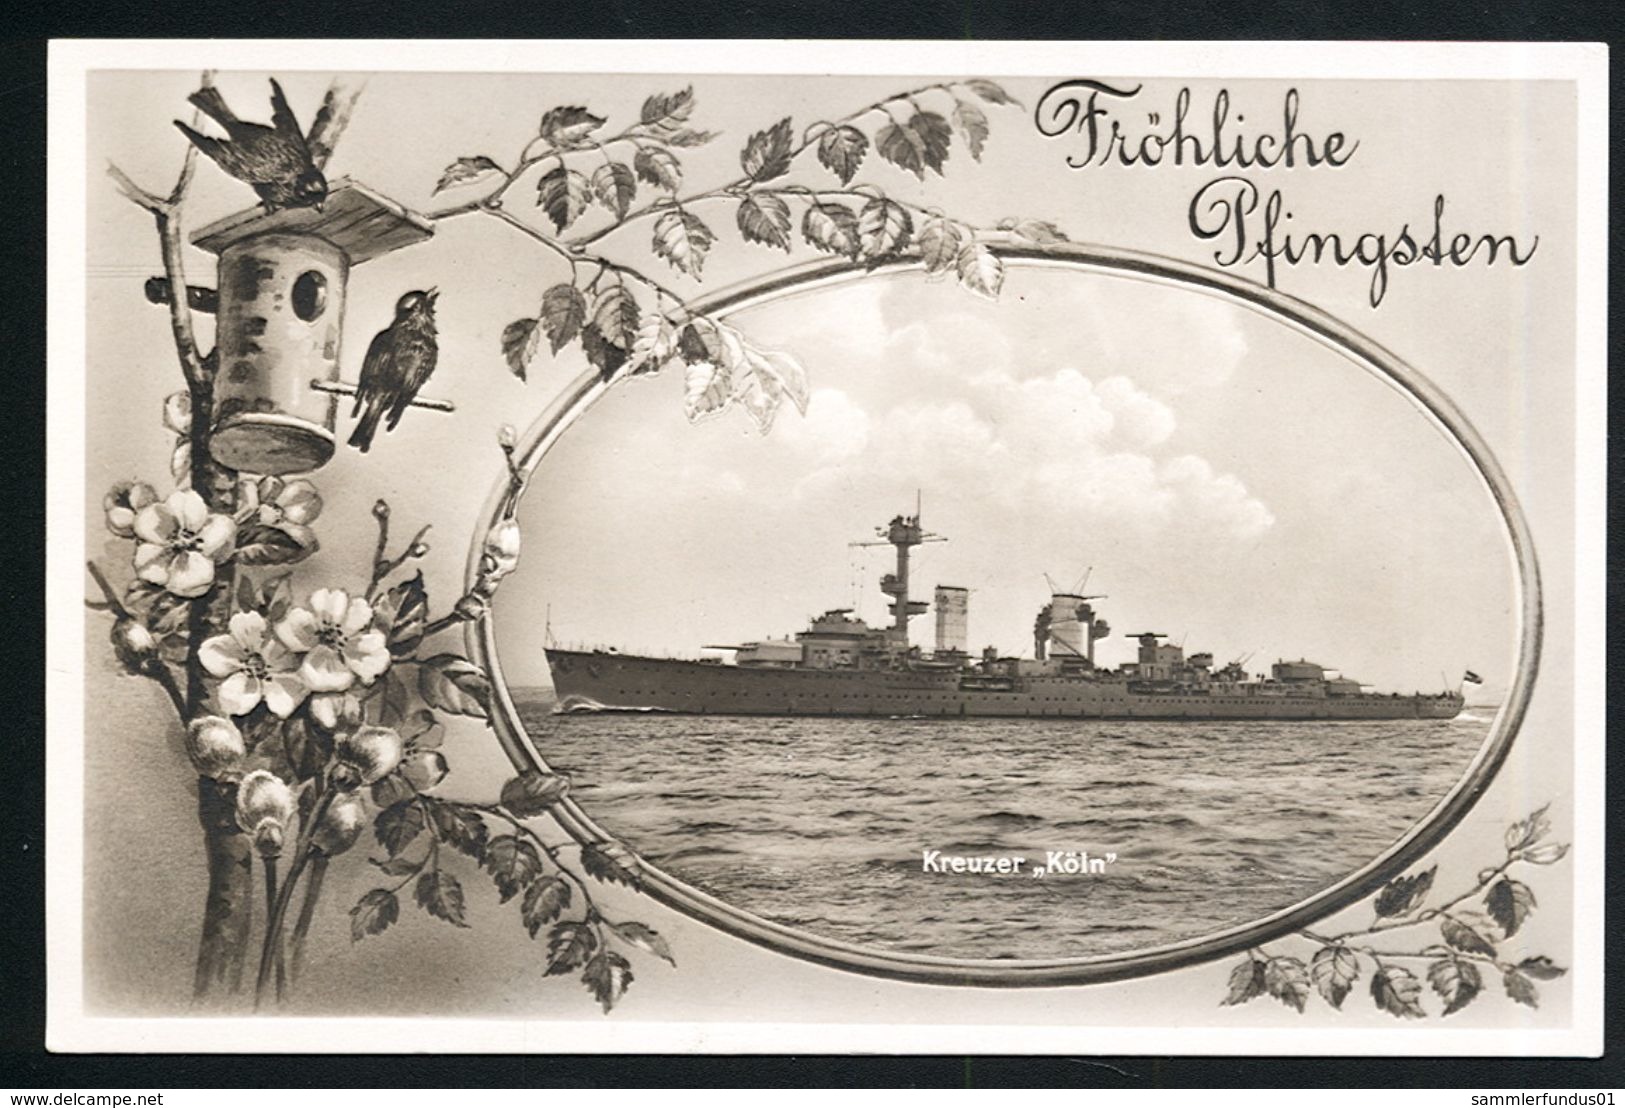 AK/CP Marine Kreuzer Köln  Reichsmarine  German Navy    Ungel/uncirc. Ca. 1932    Erhaltung/Cond.  1- / 2    Nr. 00308 - Guerra